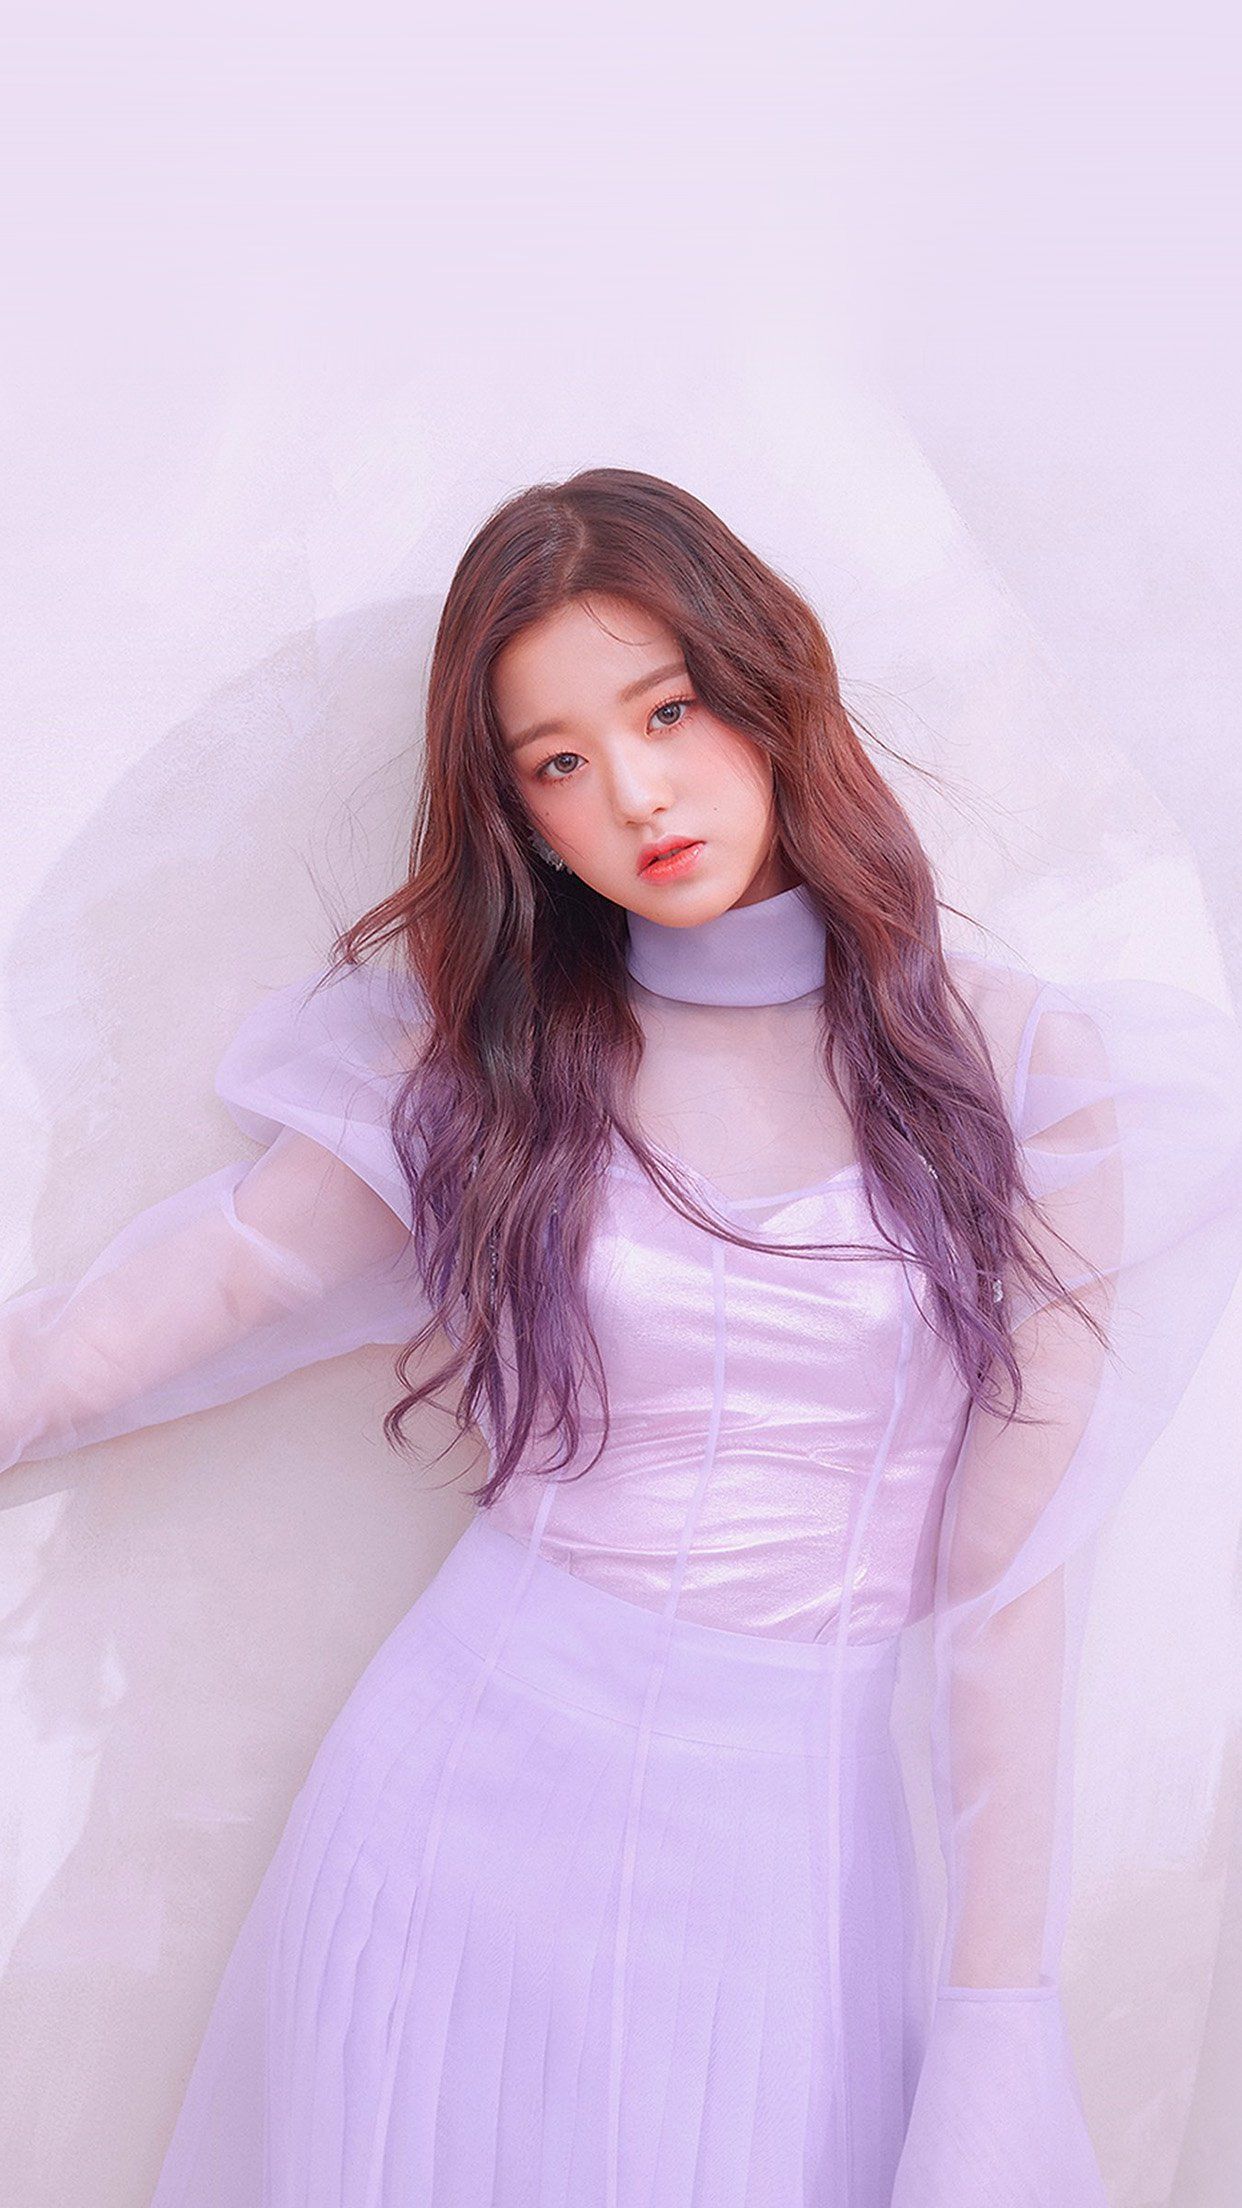 Cute Model In Purple Dress Wallpapers